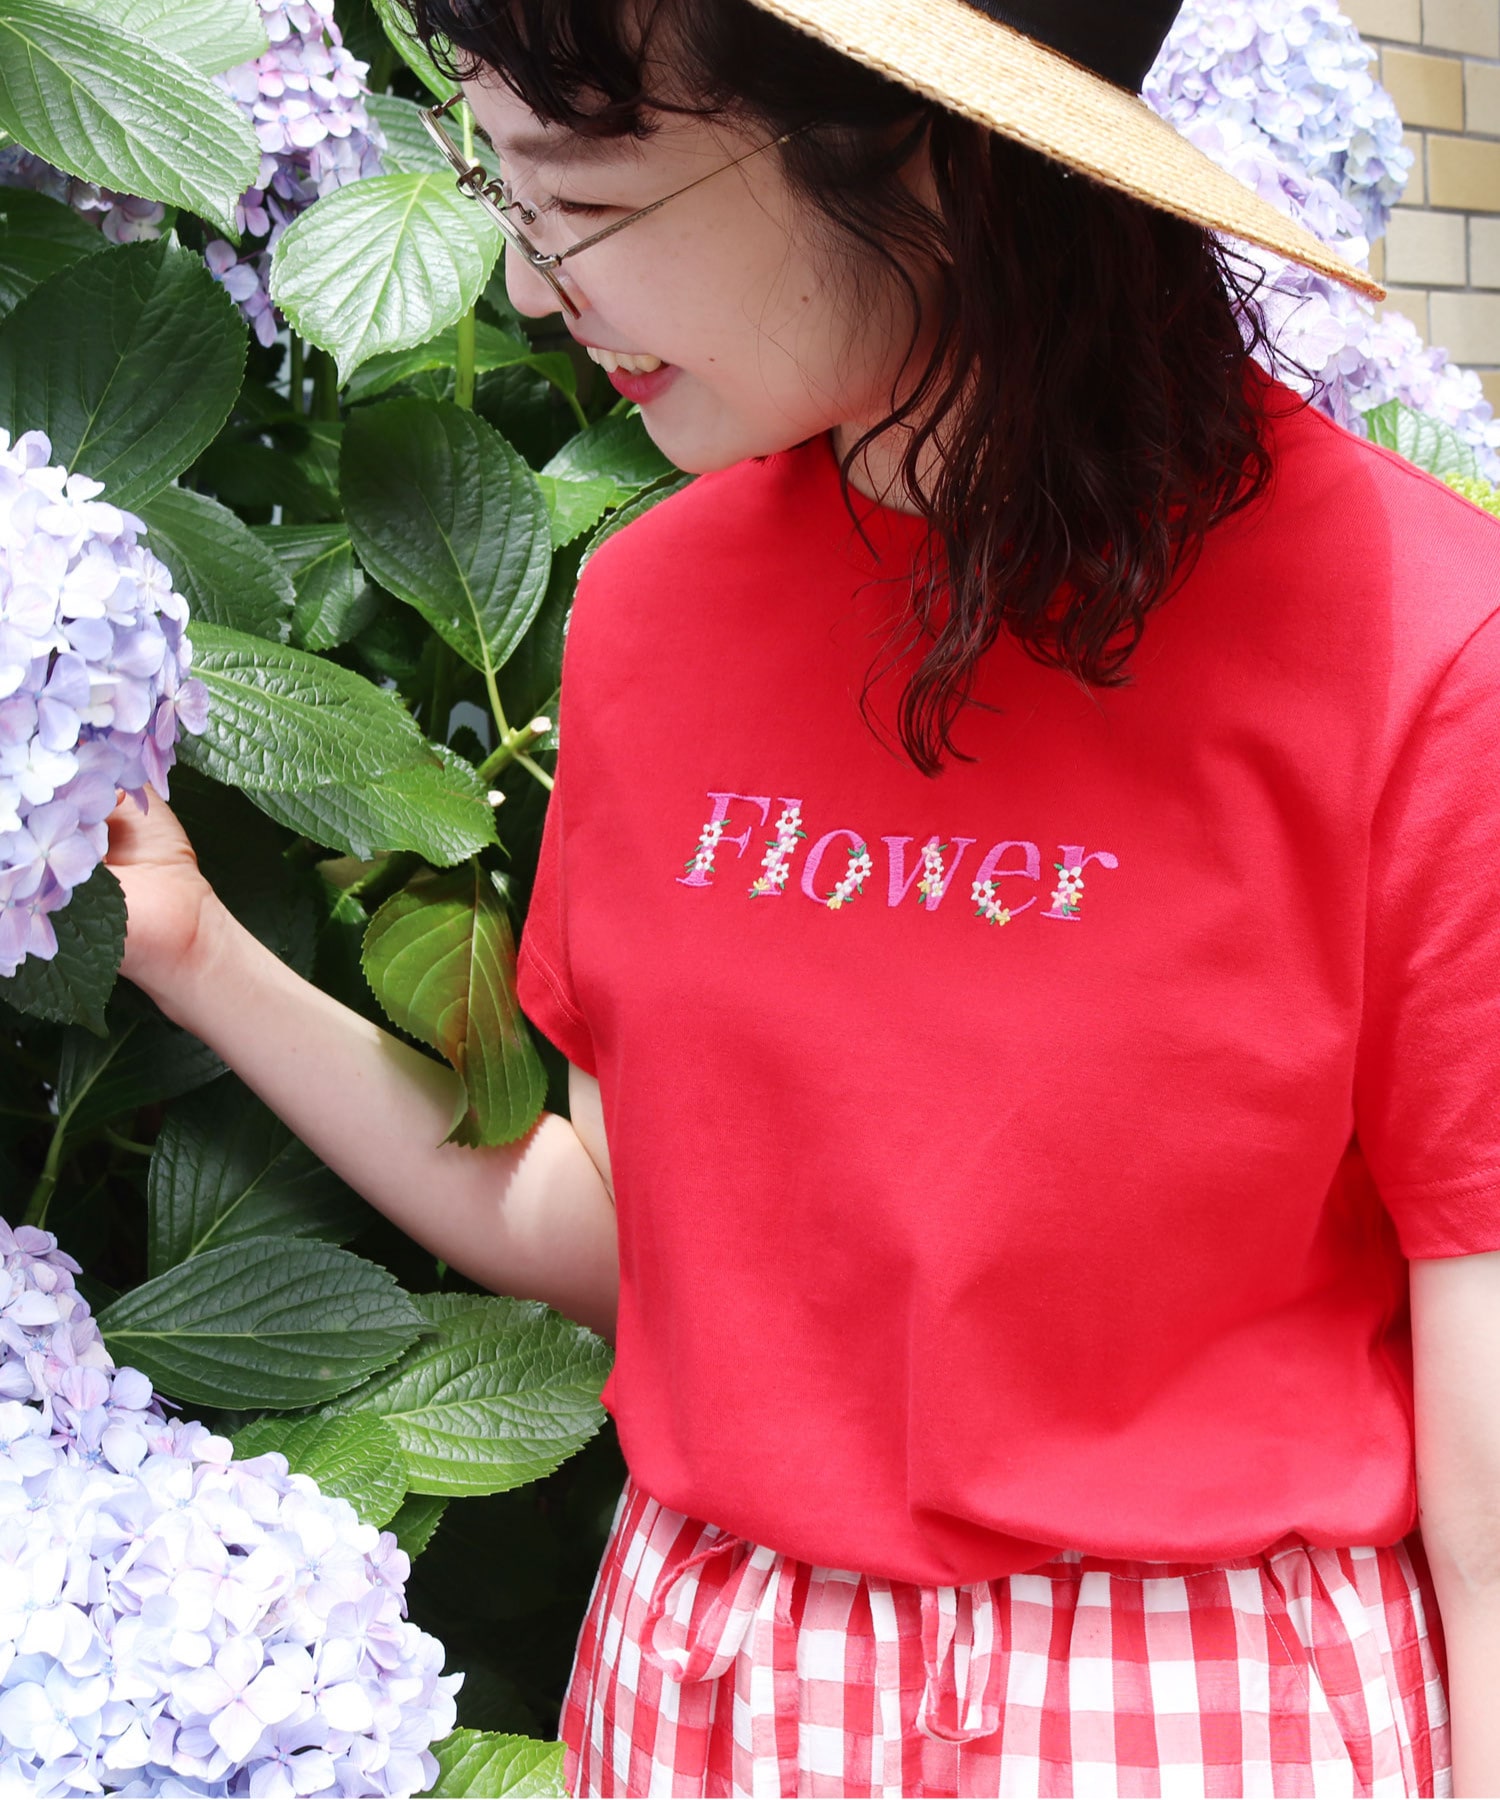 〇40/2天竺 Pineapple/Flower 刺繍Tシャツ